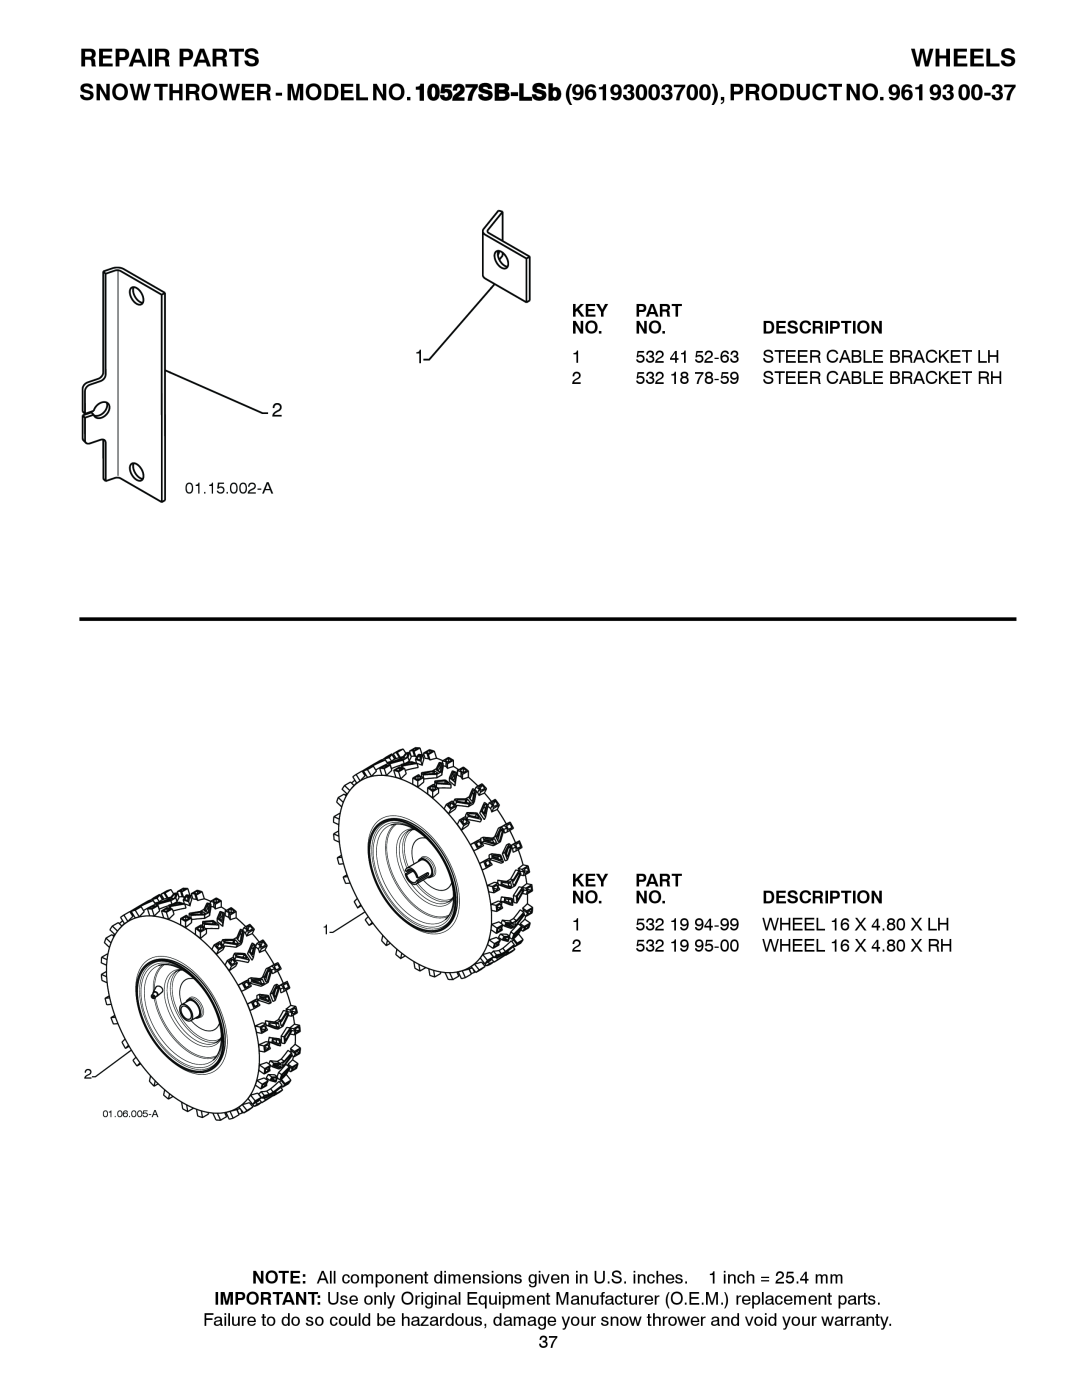 Husqvarna owner manual Wheels, Repair Parts, SNOW THROWER - MODEL NO. 10527SB-LSb 96193003700, PRODUCT NO, Description 